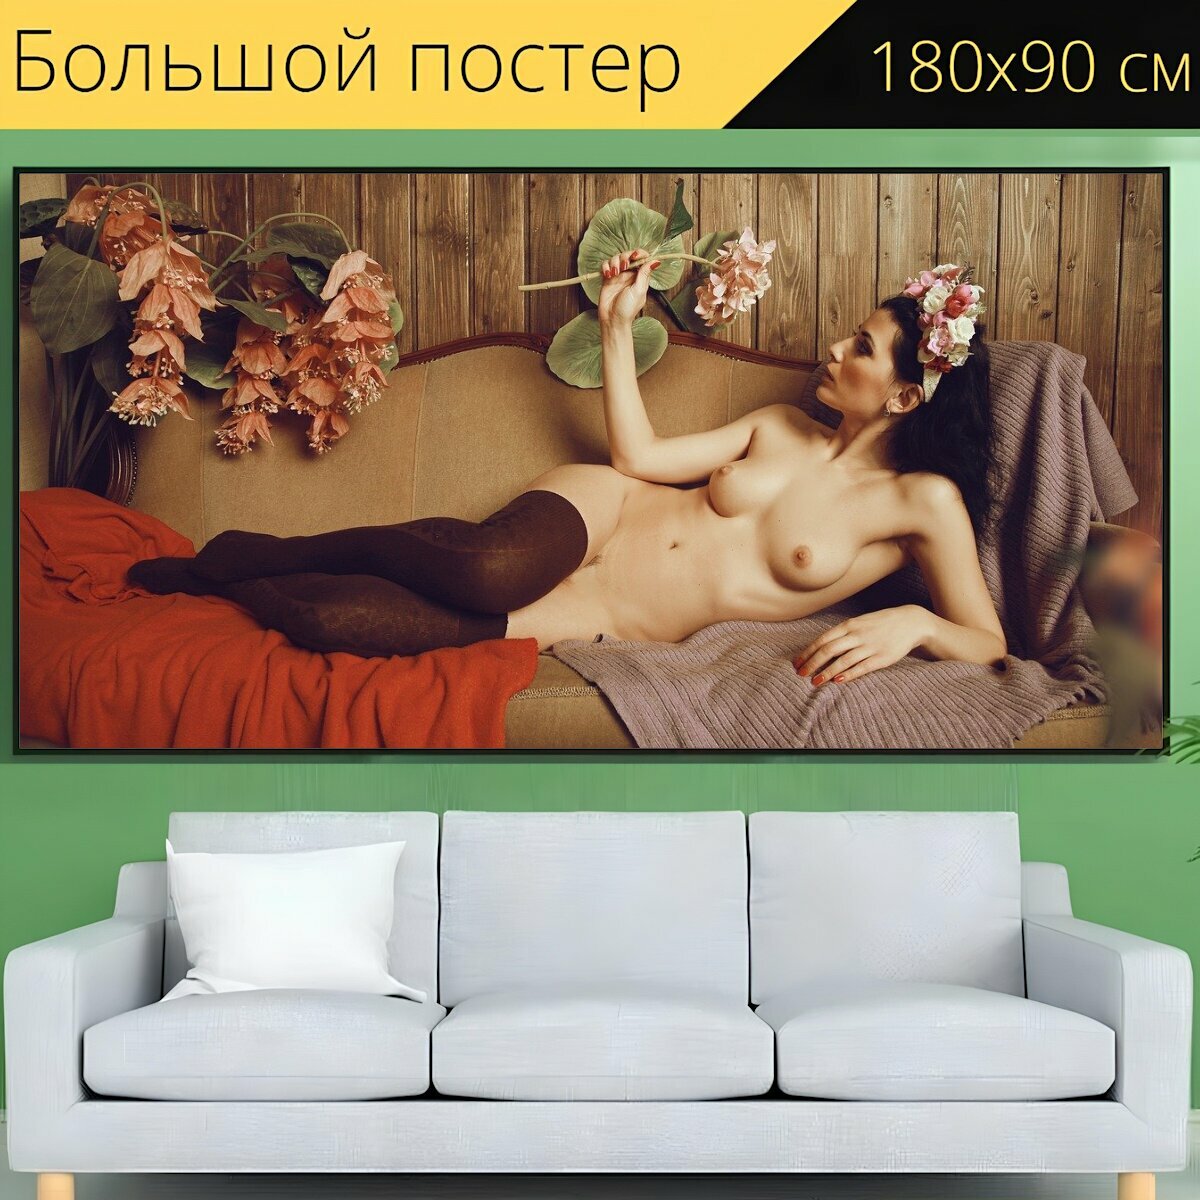 Большой постер "Ню, изобразительное искусство, женщина" 180 x 90 см. для интерьера